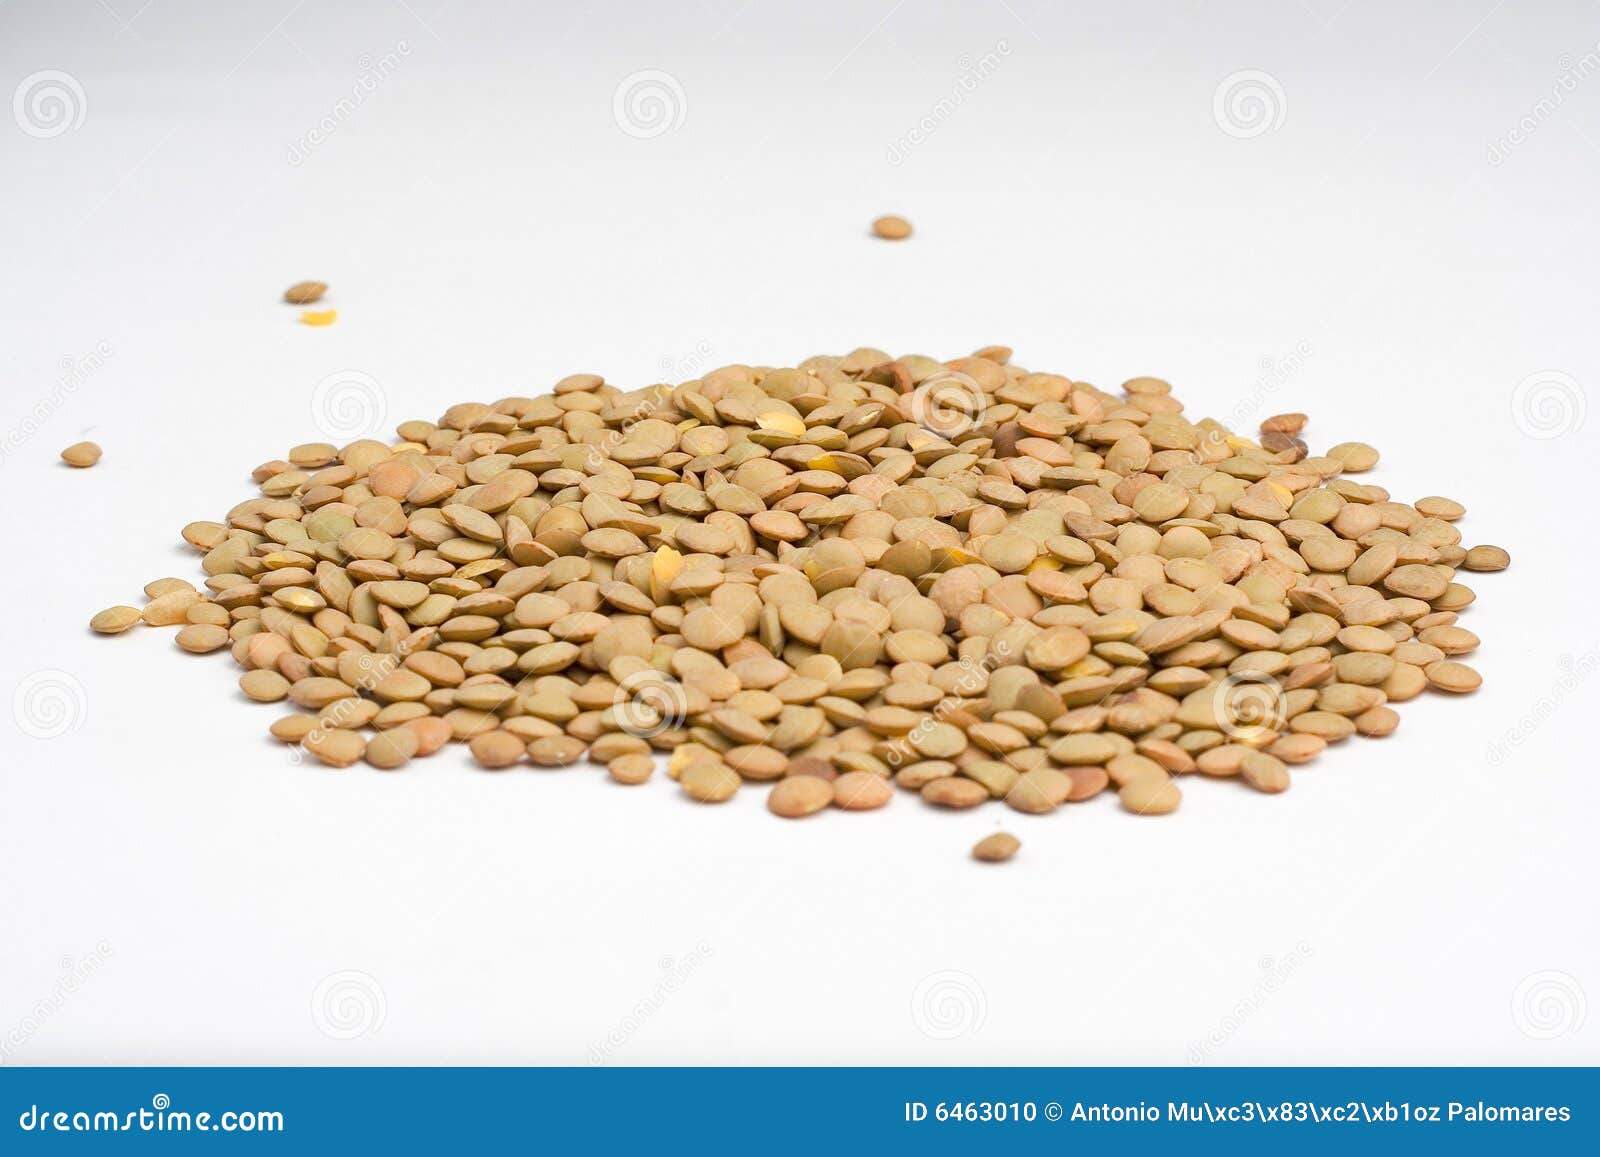 handful of uncooked lentils